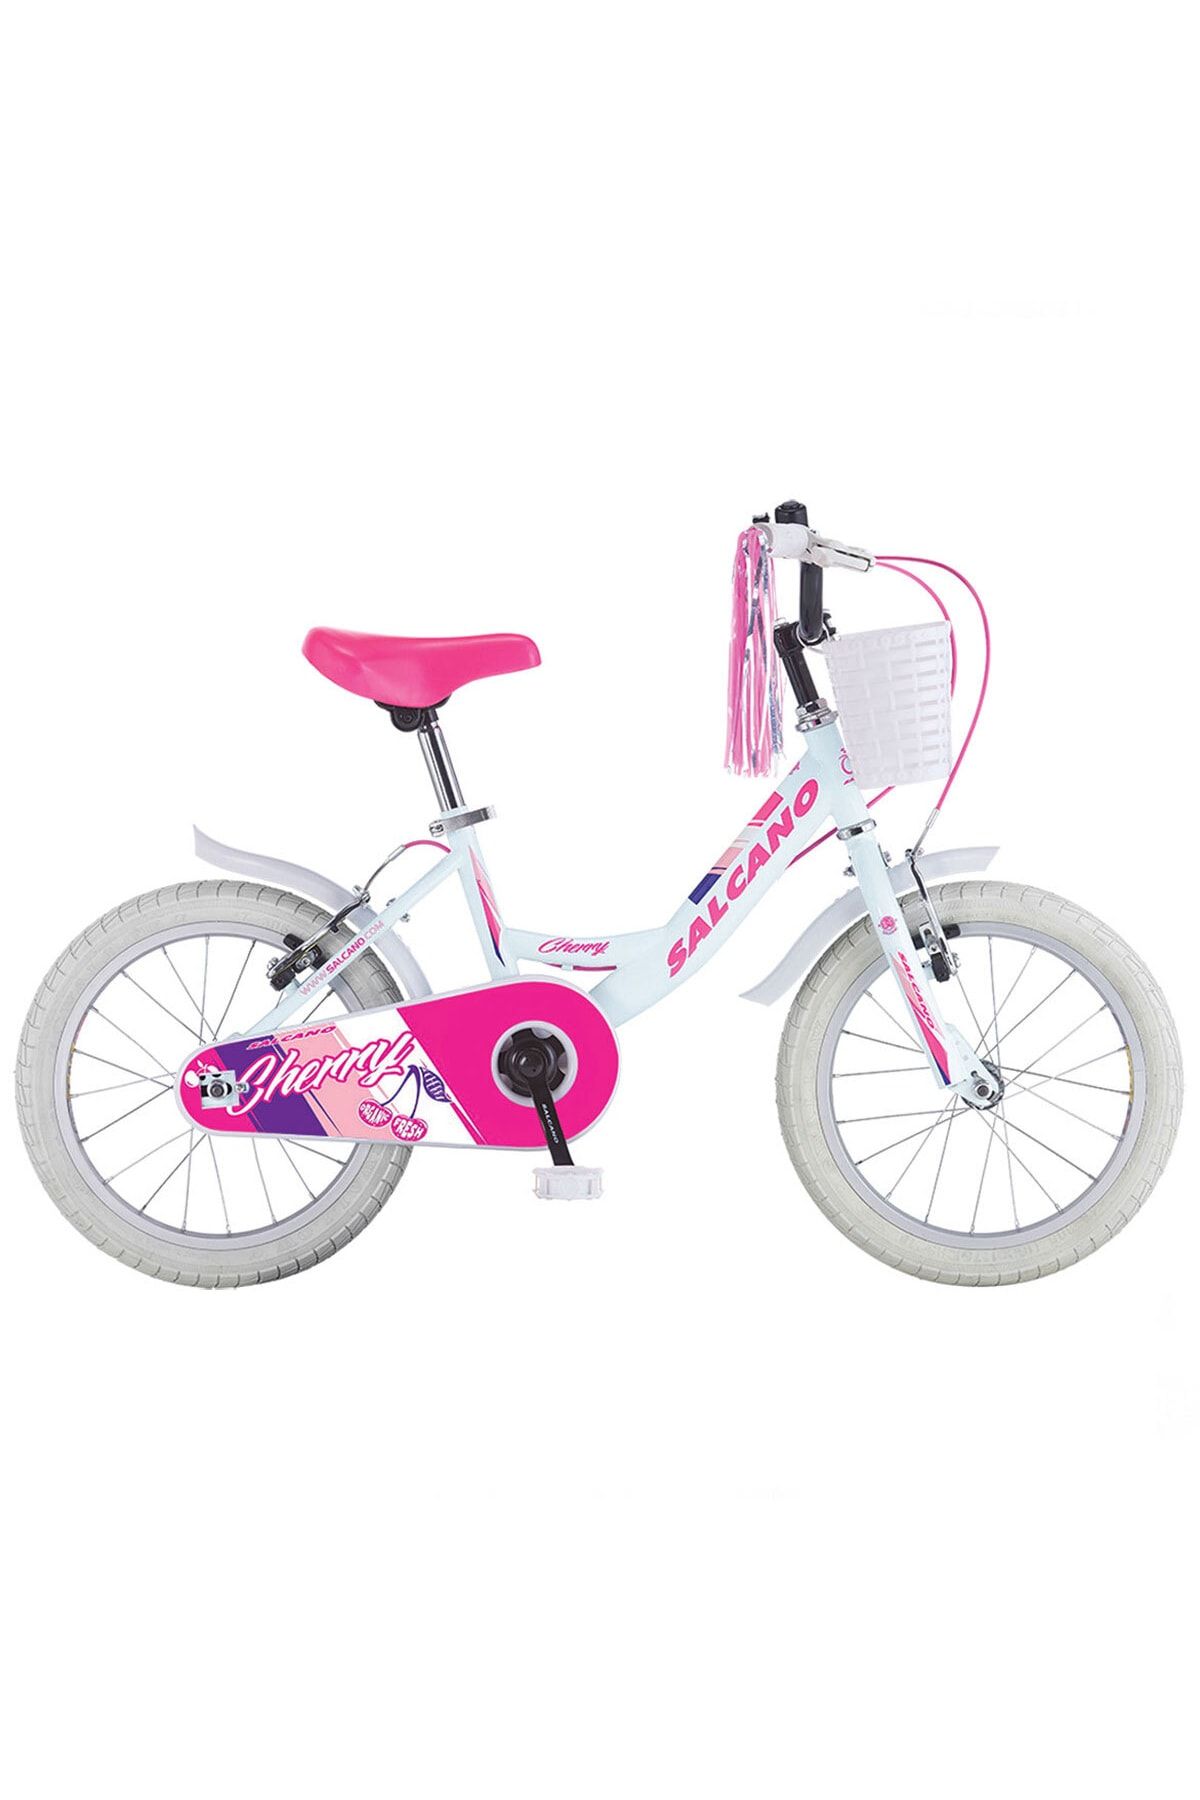 Salcano Cherry 16 Jant Kız Çocuk Bisikleti Aksesuarlı Model 2021